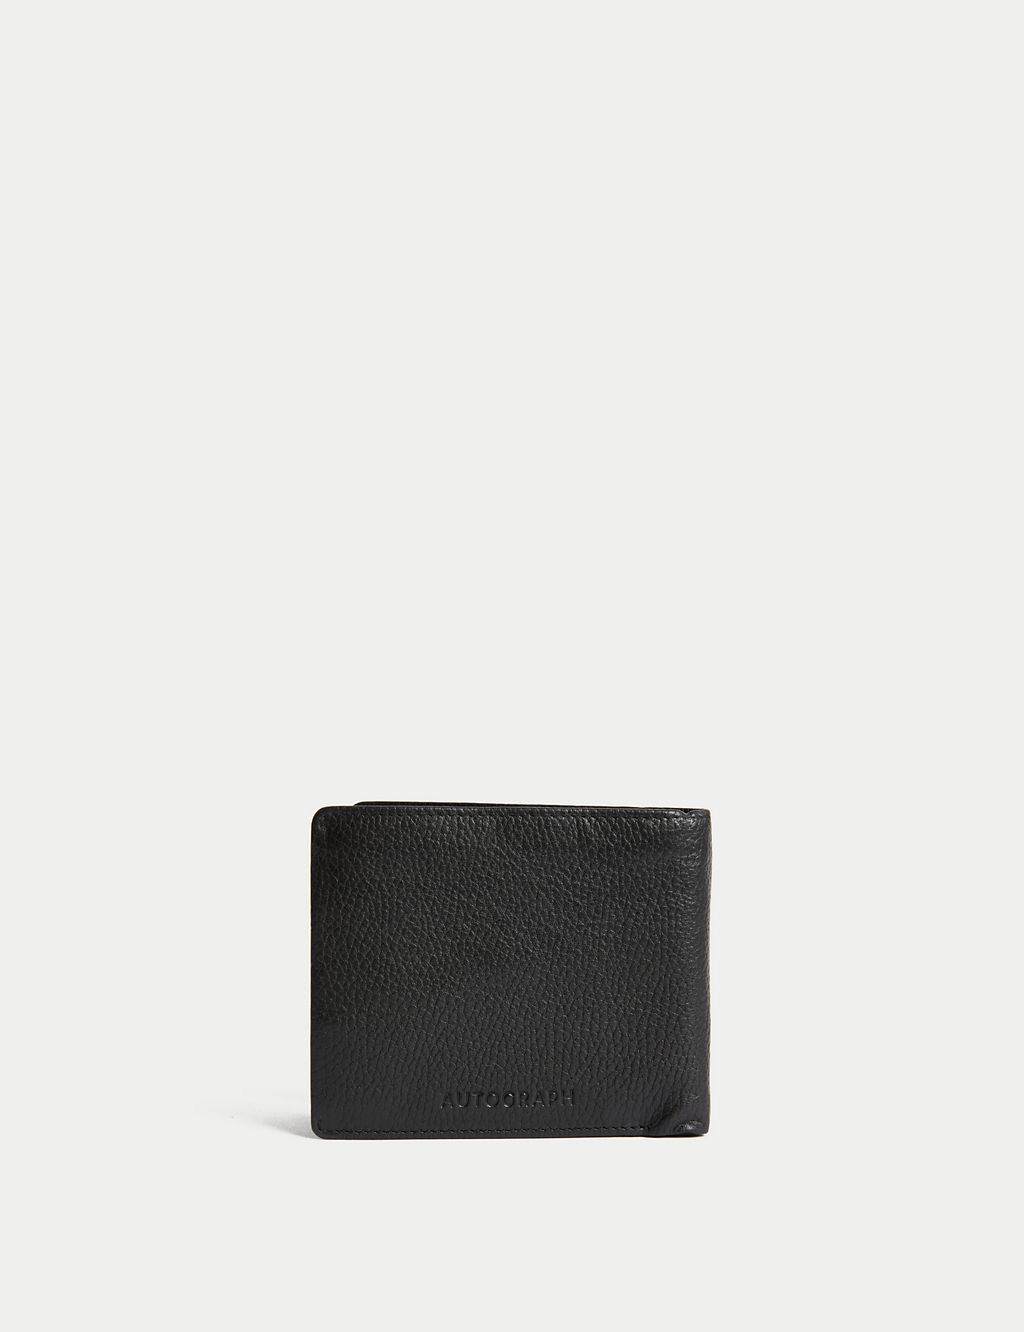 Leather Cardsafe™ Wallet 1 of 4